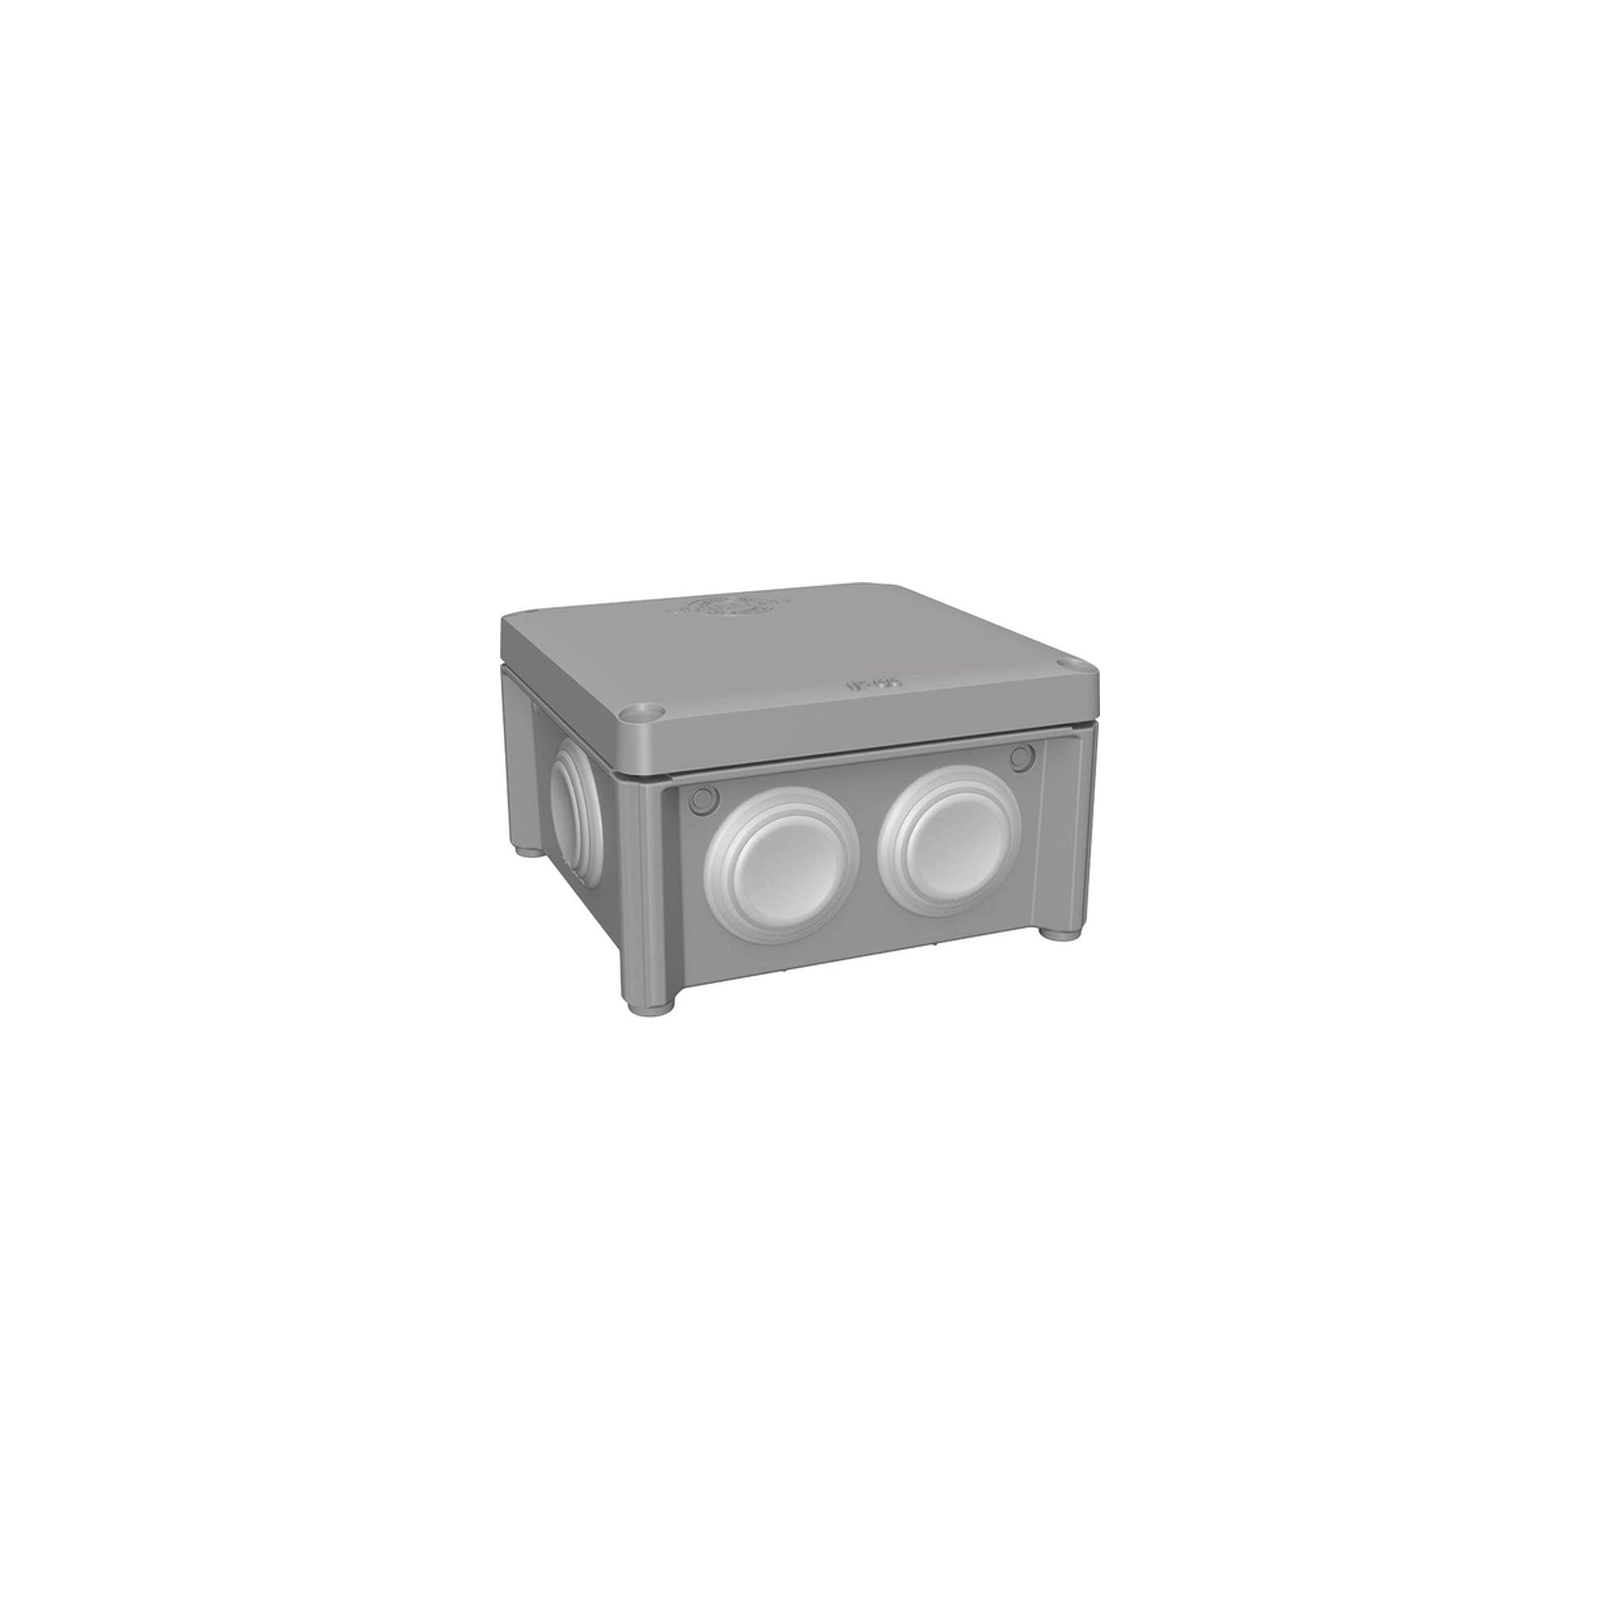 Распределительная коробка Plank Electrotechnic IB005 IP65-85*85*40 (PLK6505650) изображение 2